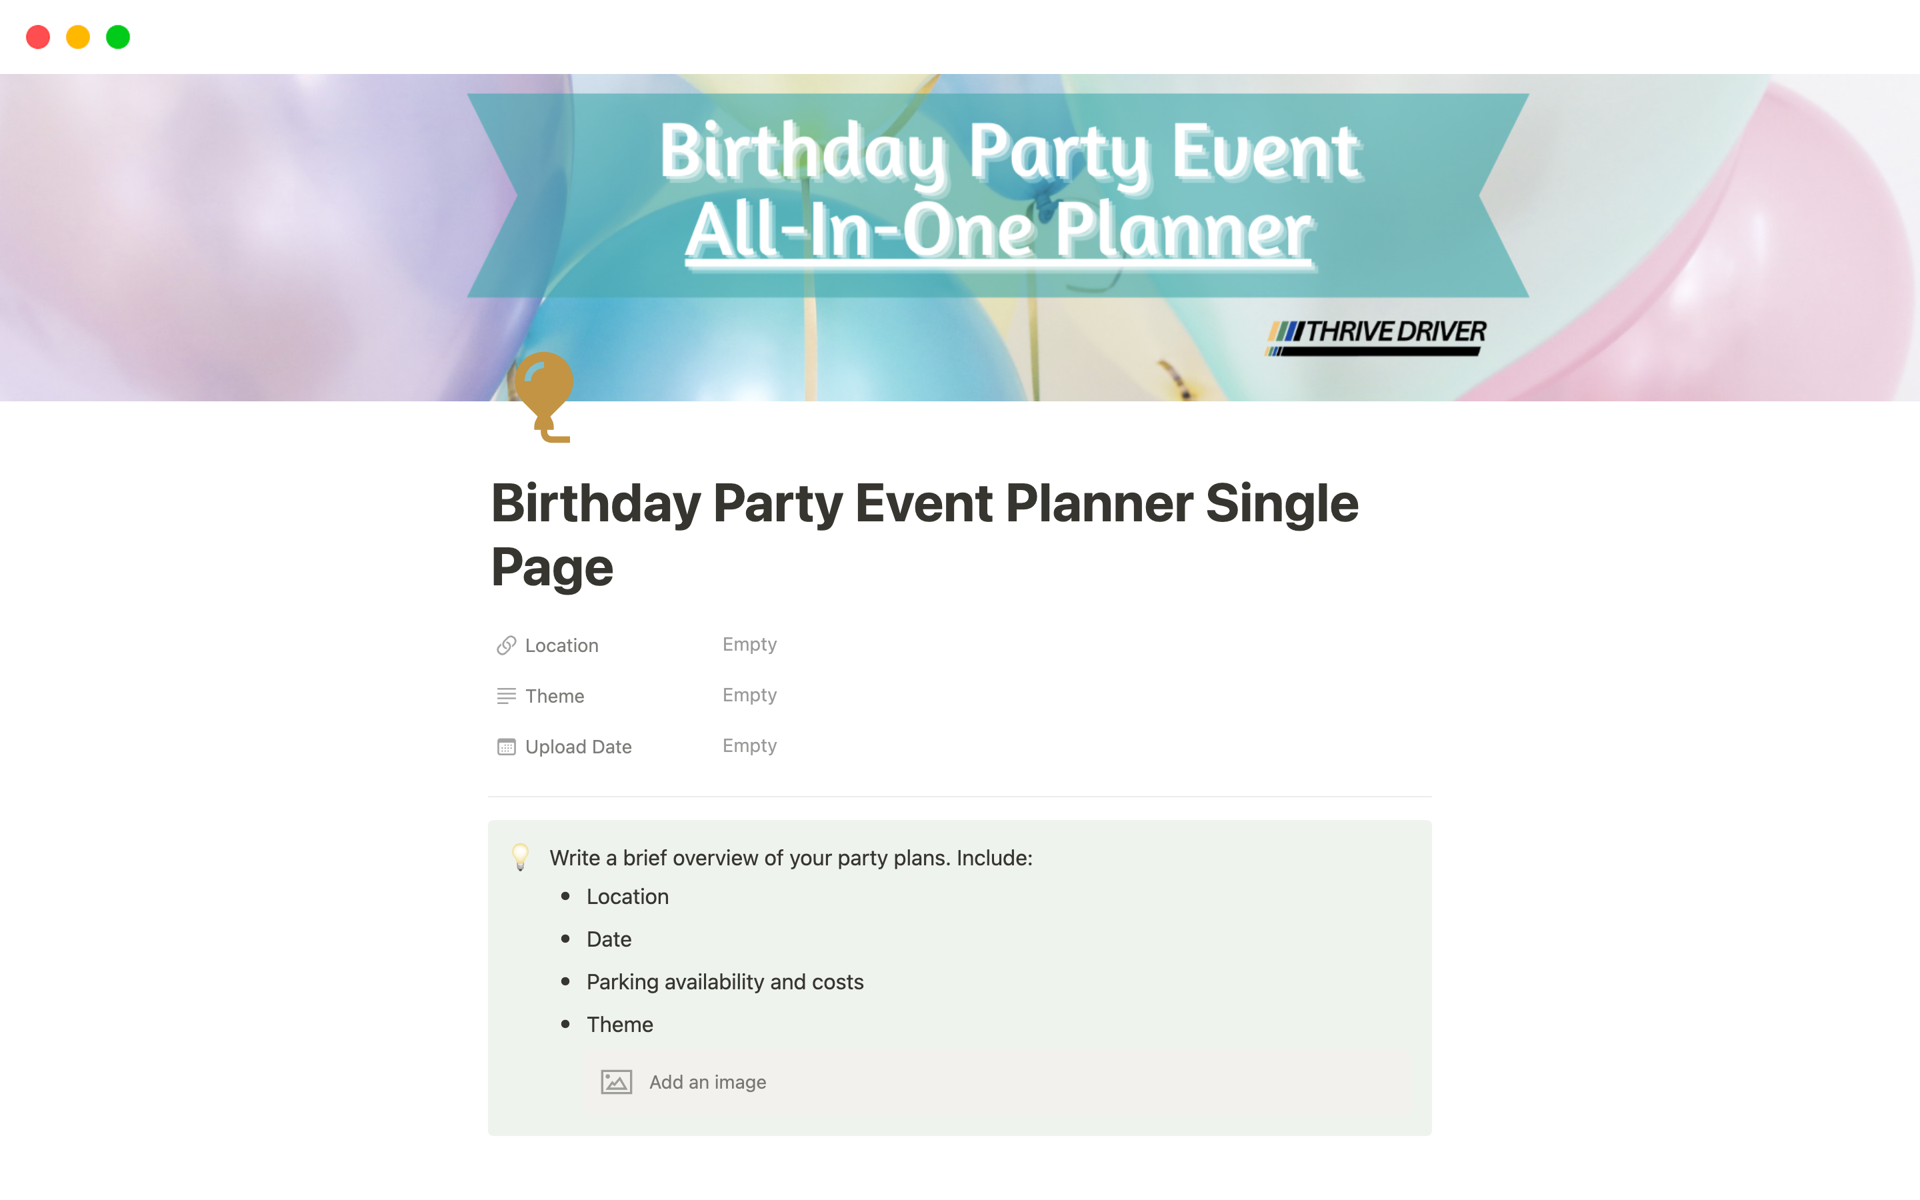 Uma prévia do modelo para Birthday Party Event Planner Single Page